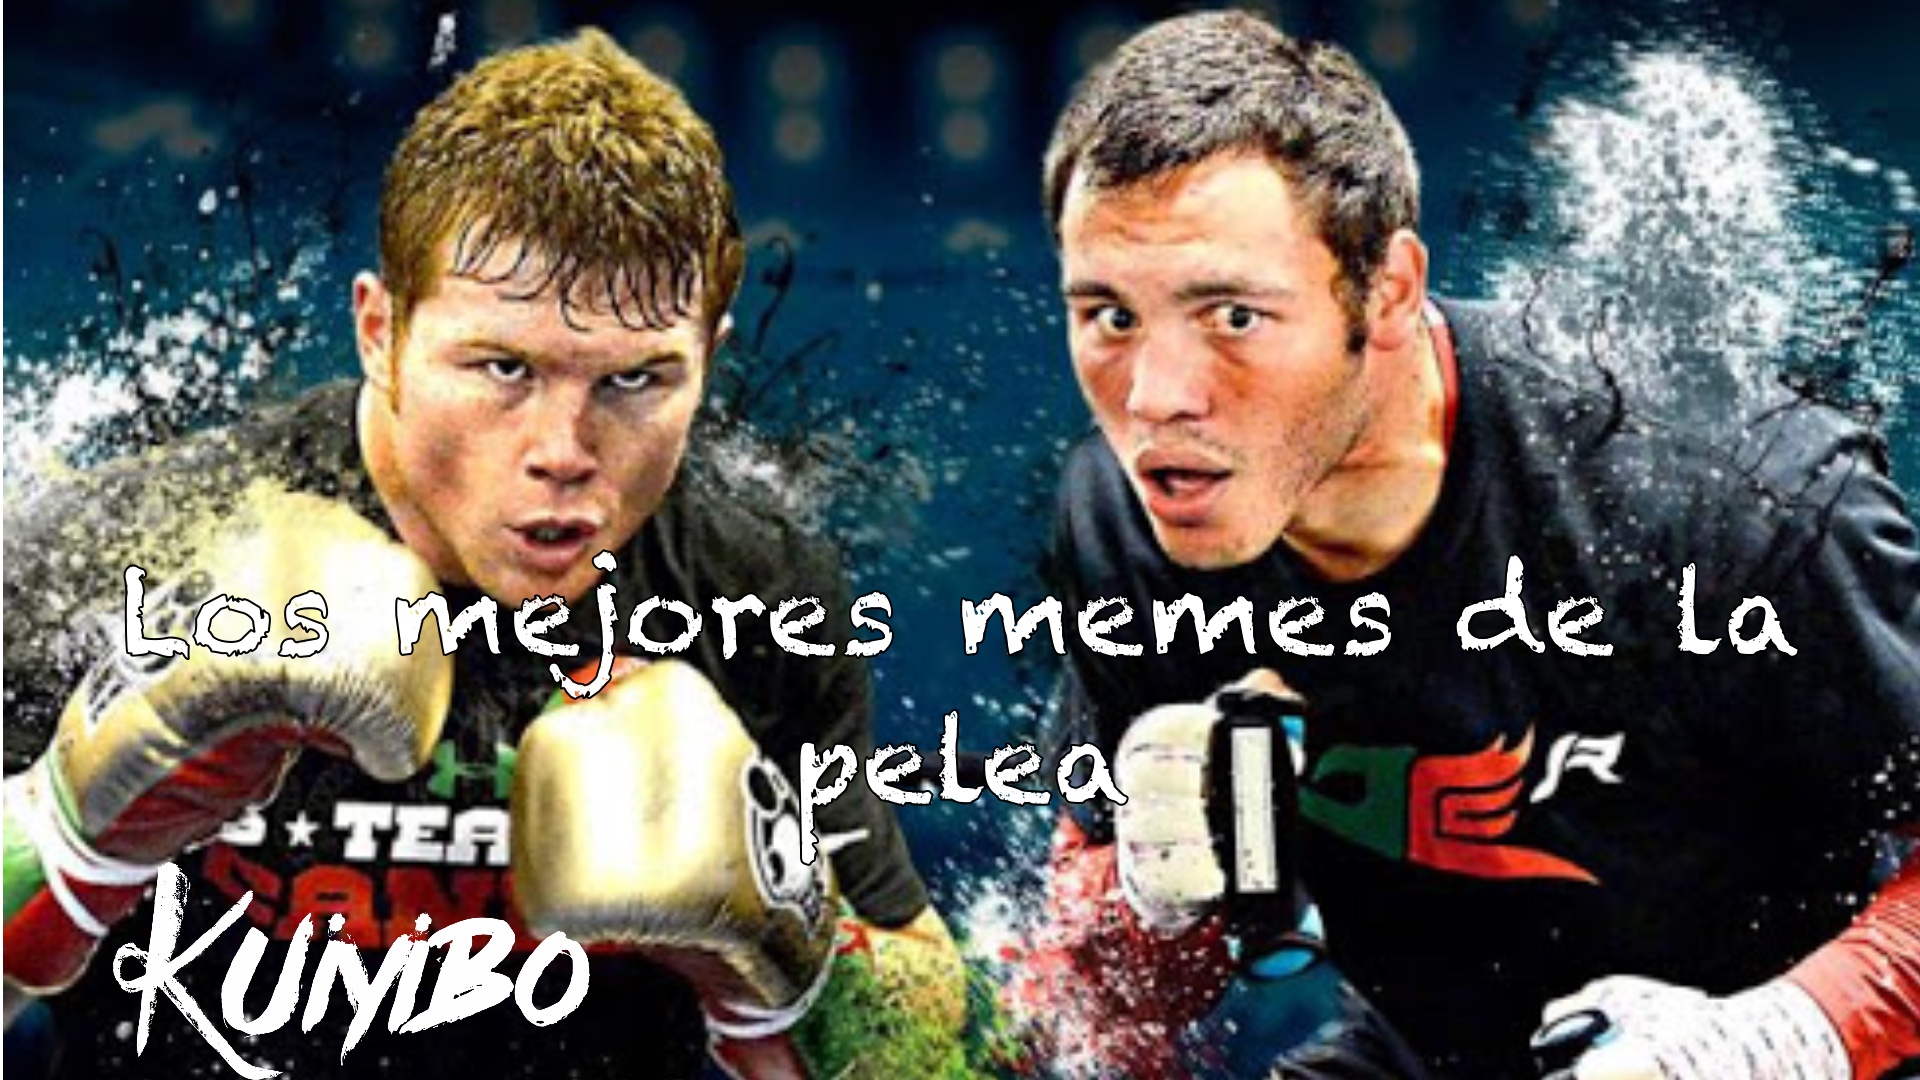 Los mejores memes de la pelea Canelo vs Chávez